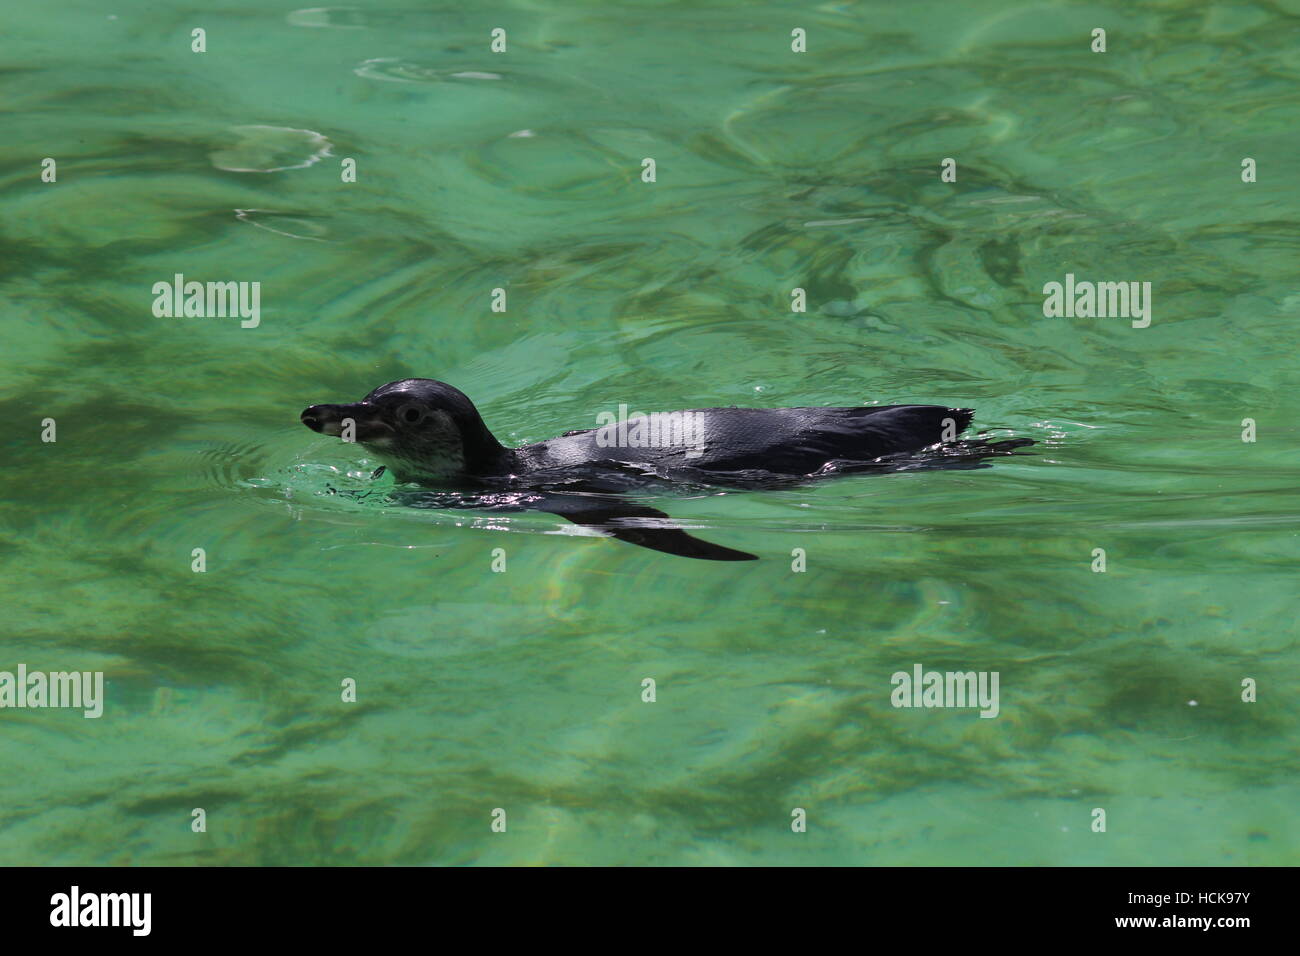 Humboldt Spheniscus humboldti penguin swimming full body length Stock Photo